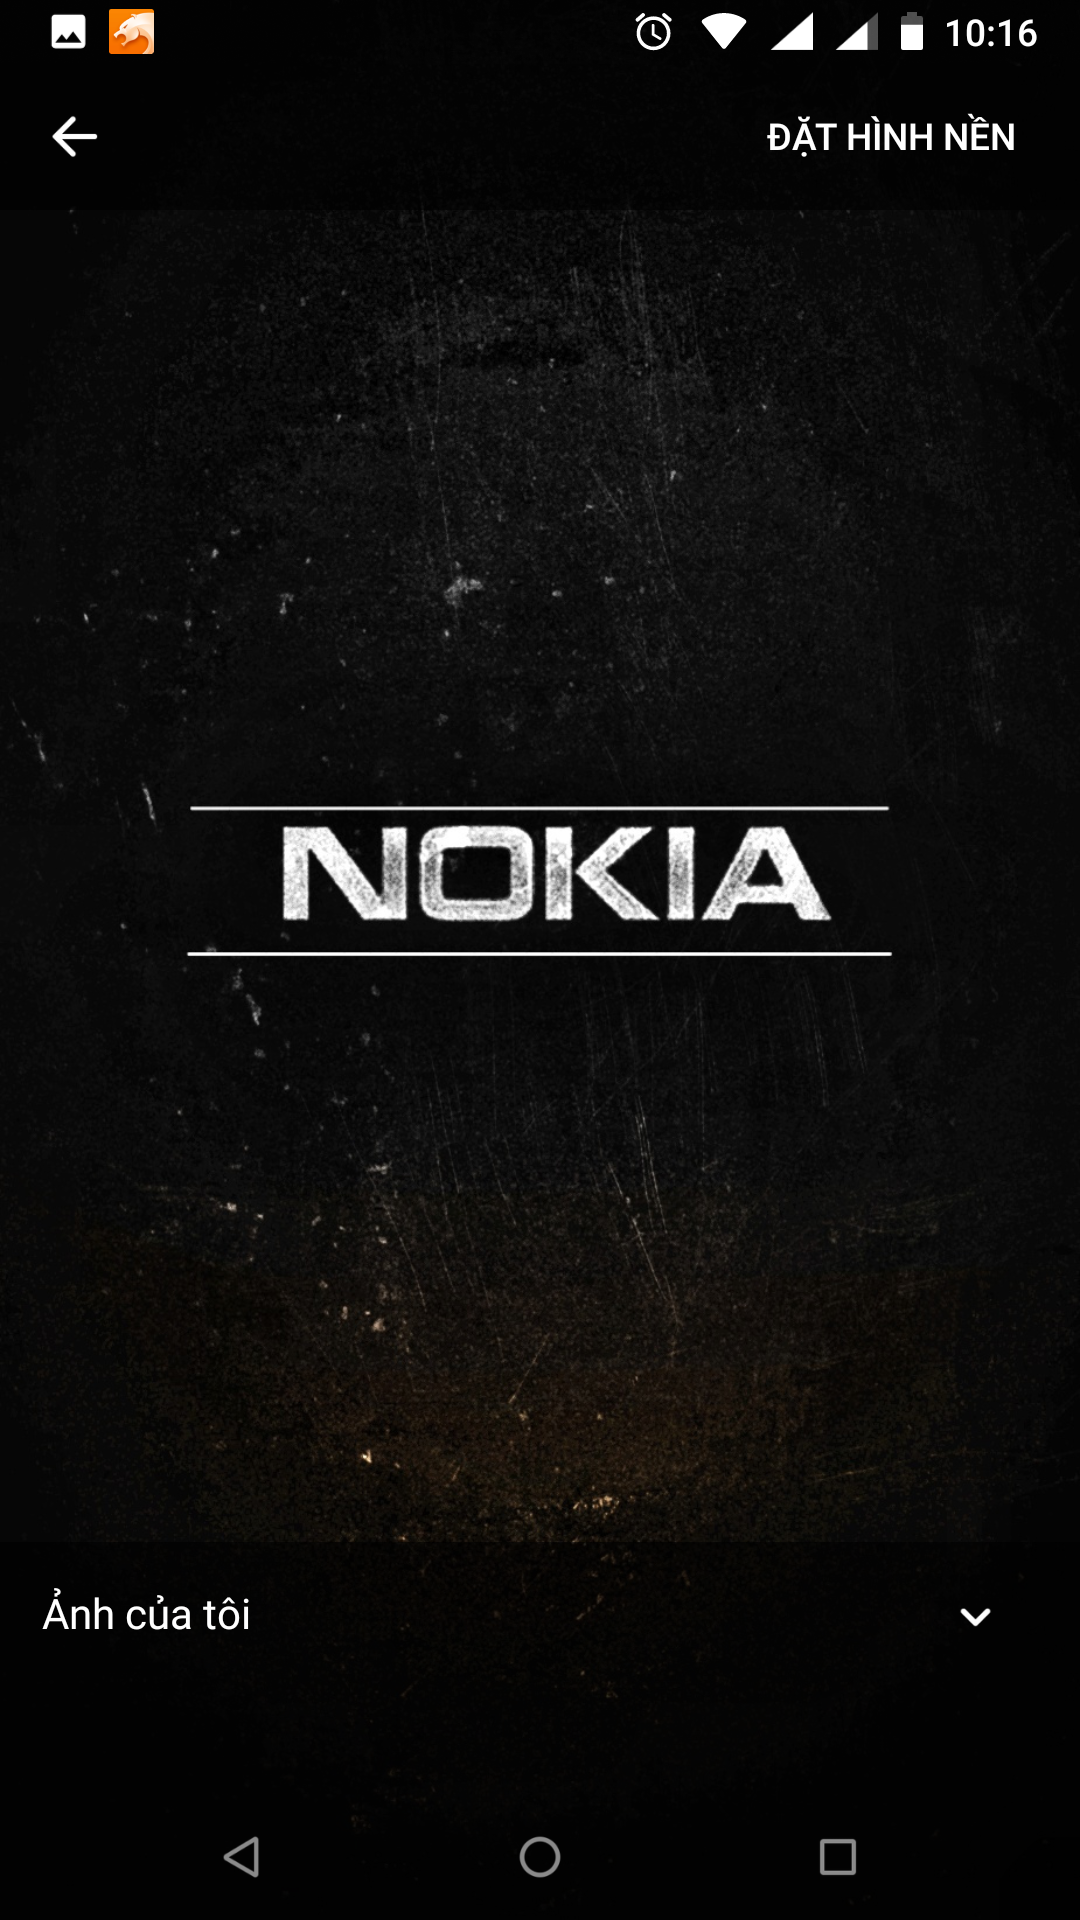 Nokia 1280 | Điện thoại pin siêu bền, giá rẻ - Thegioididong.com